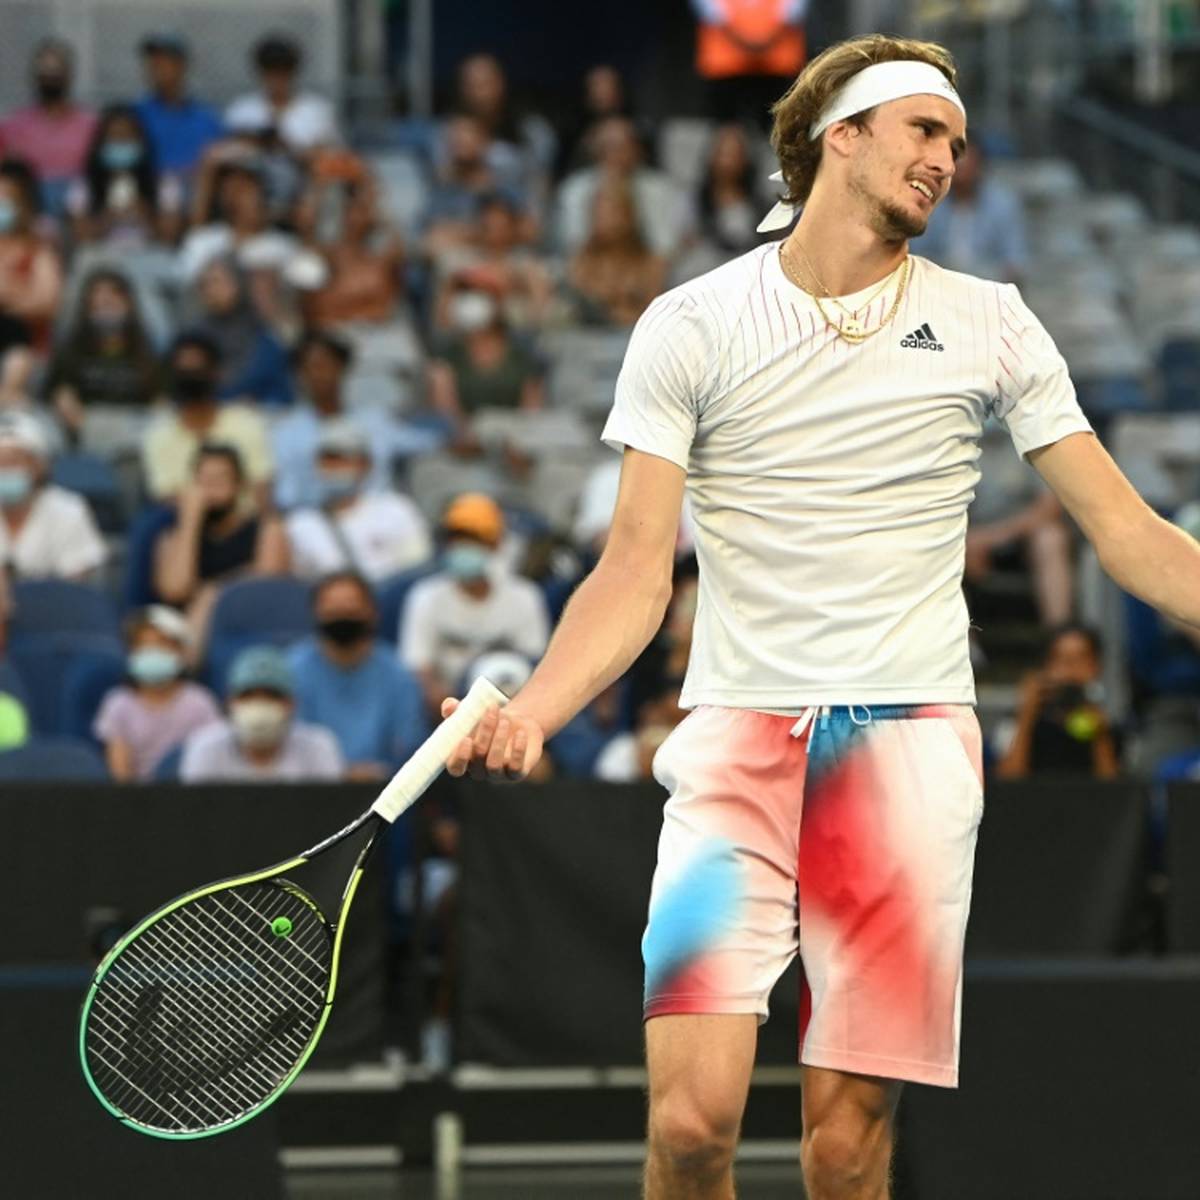 Der sechsmalige Grand-Slam-Champion Boris Becker hat Alexander Zverev nach dessen Achtelfinal-Aus bei den Australian Open kritisiert.